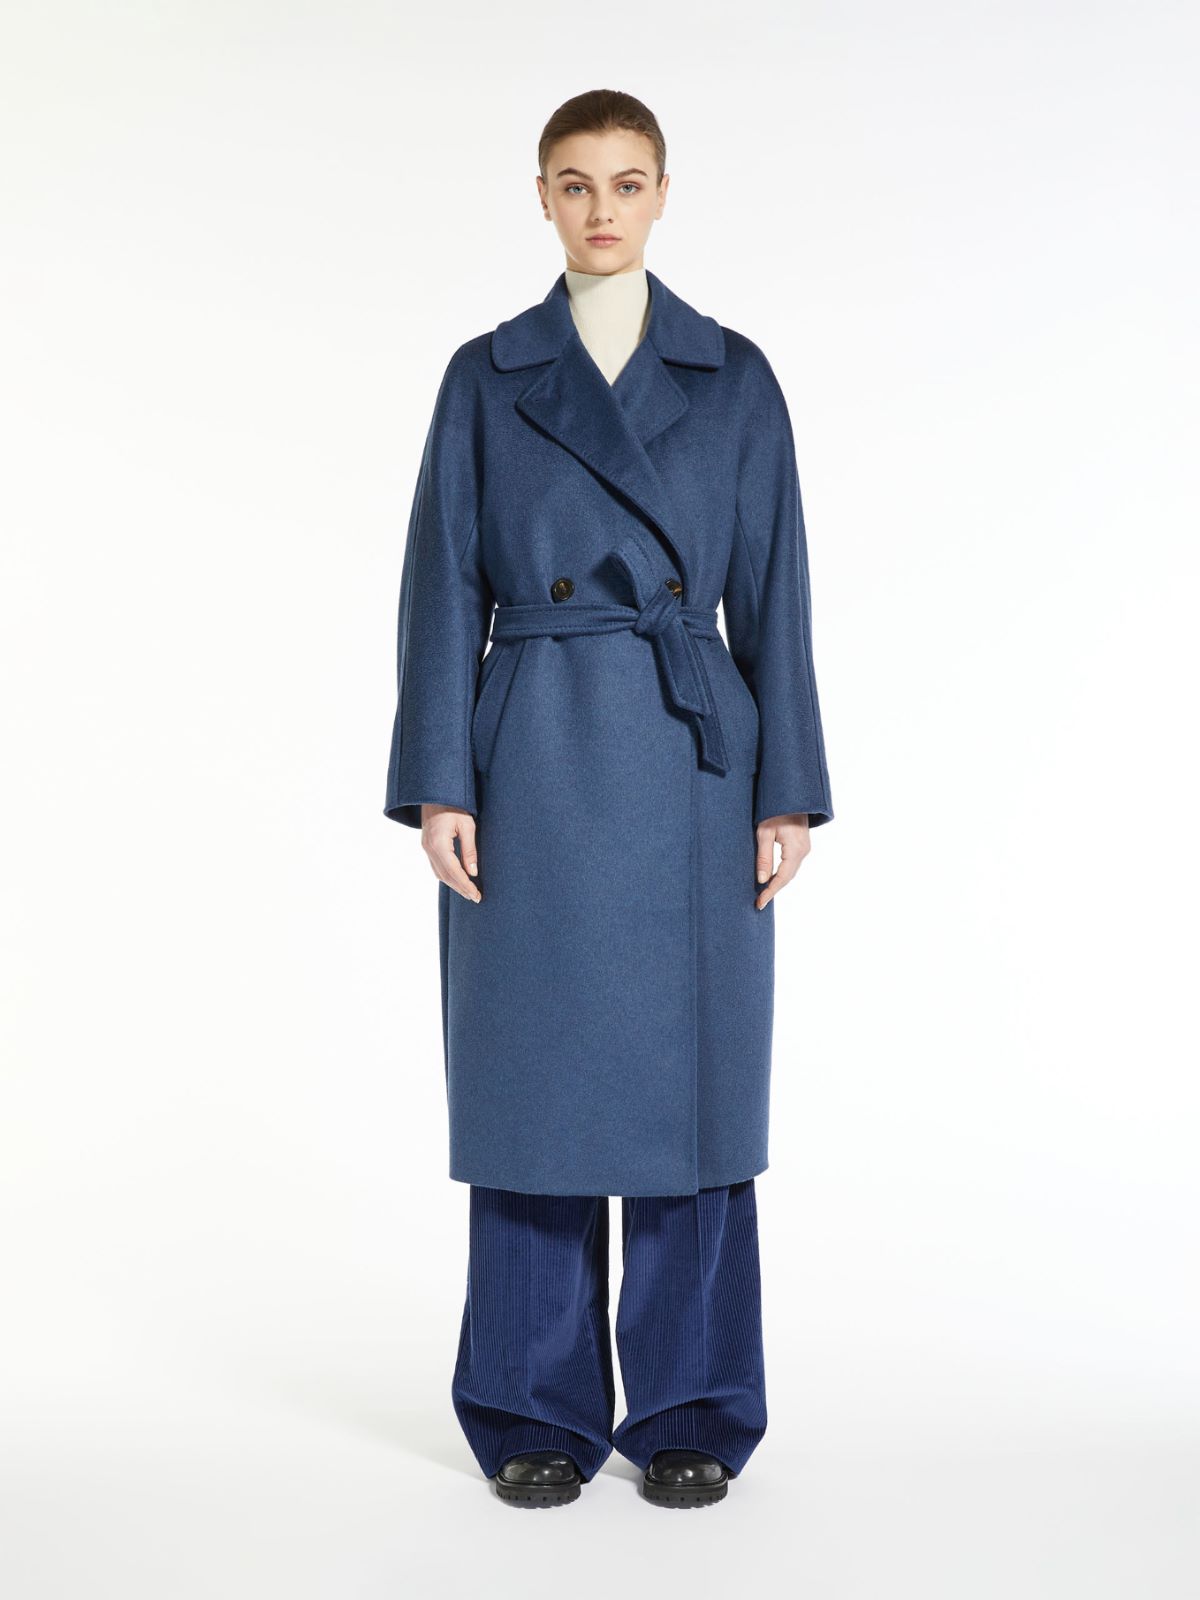 Wool broadcloth coat - NAVY - Weekend Max Mara - 2